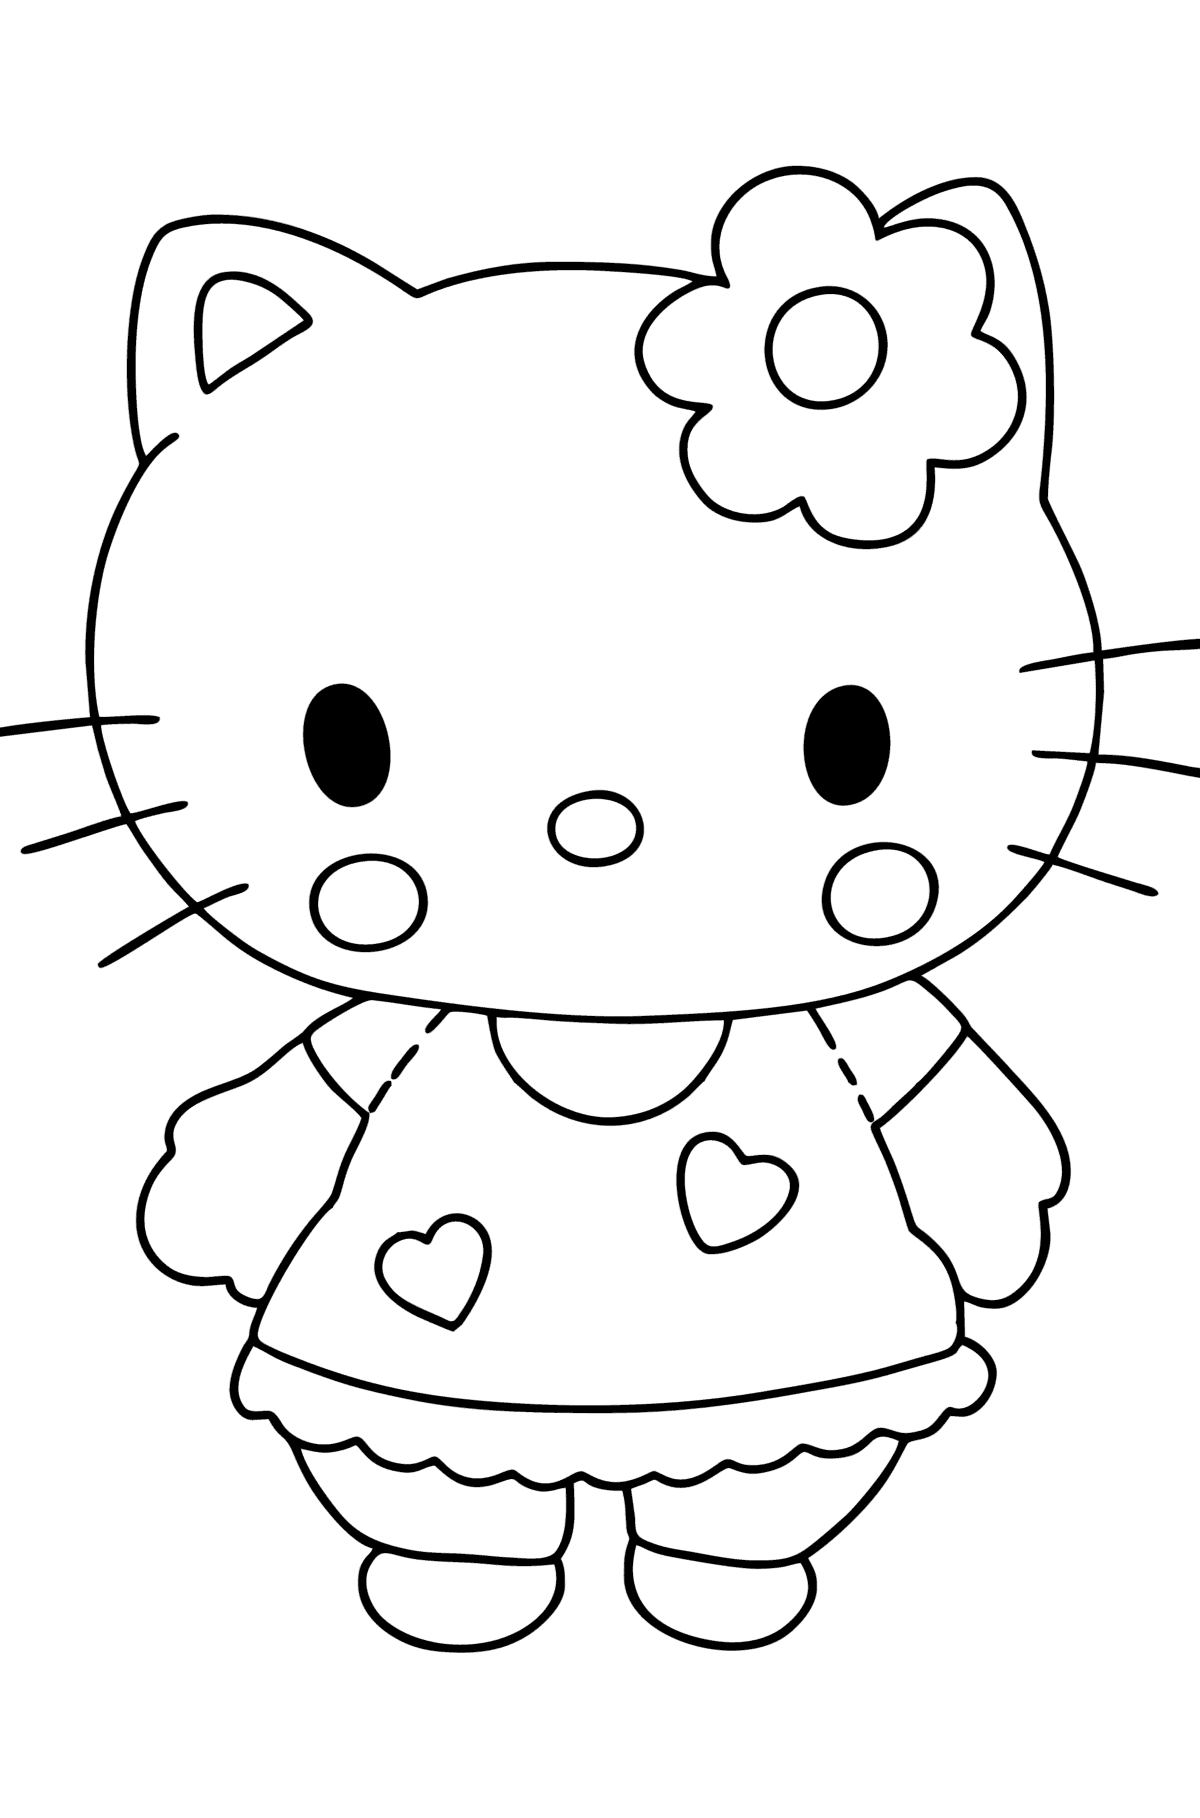 Desenho de Hello Kitty para colorir - Imagens para Colorir para Crianças